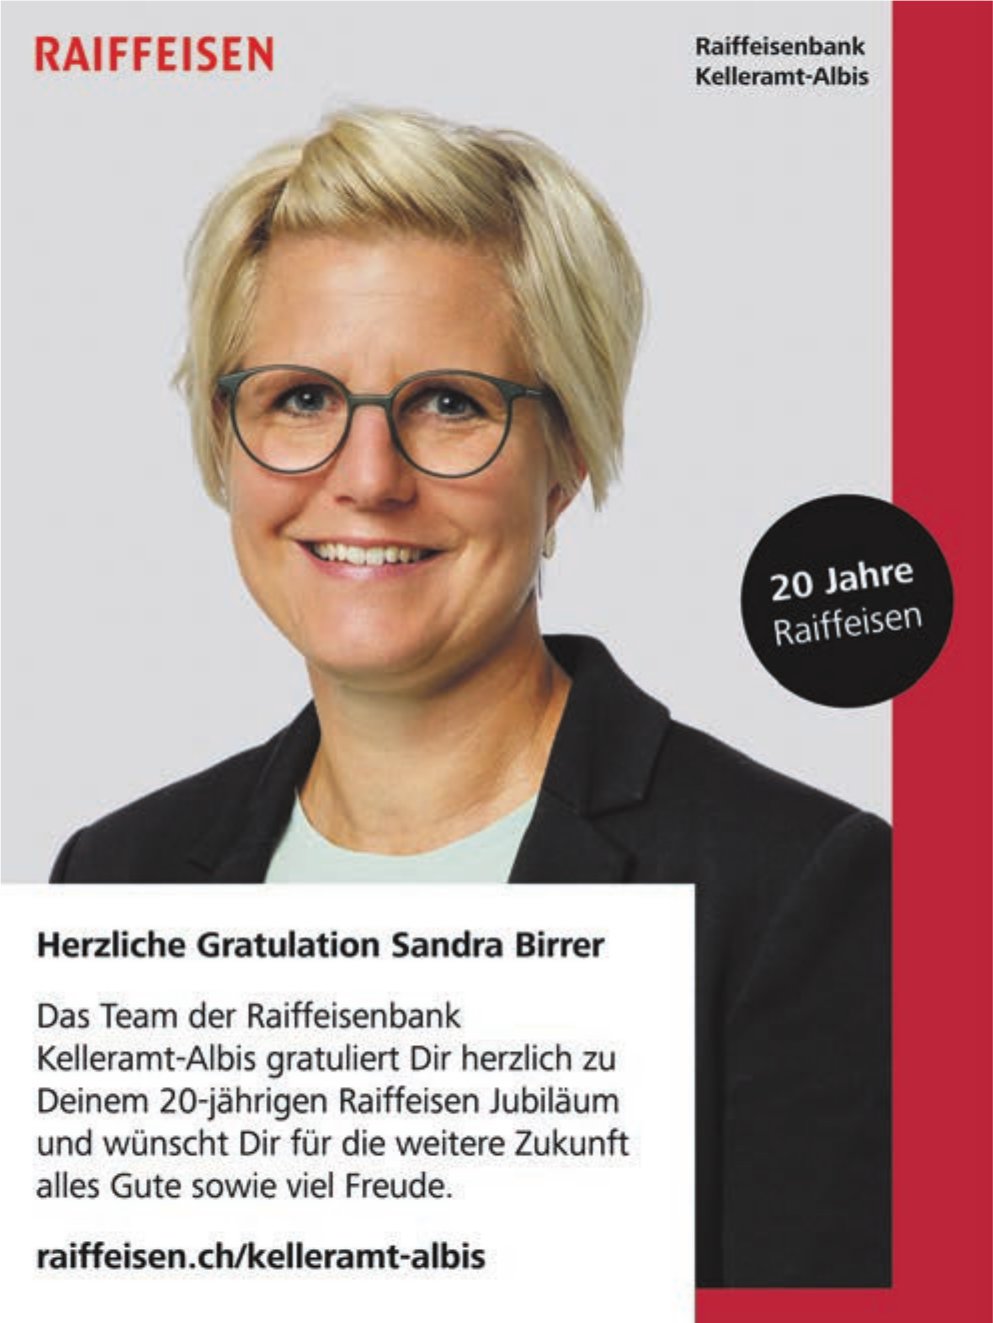 Raiffeisenbank, Kelleramt-Albis - Herzliche Gratulation Sandra Birrer zu 20 Jahre Jubiläum